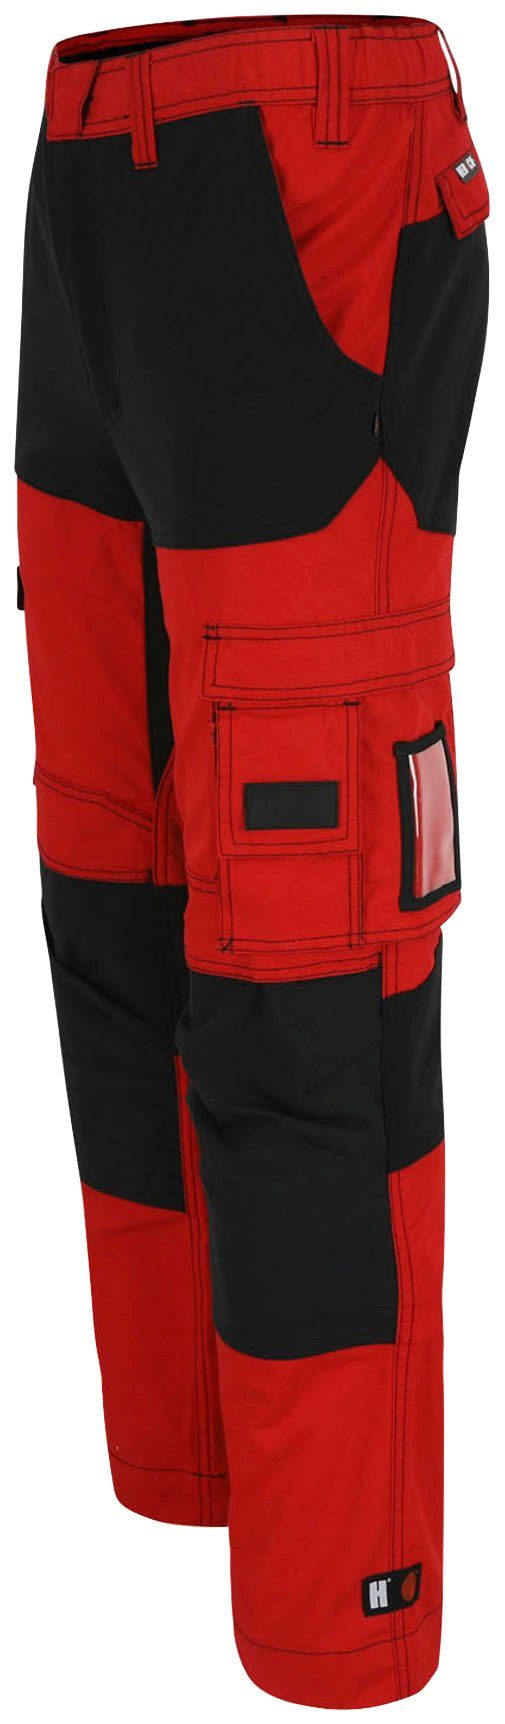 Hector 4-Wege-Stretch, Multi-Pocket, Arbeitshose rot/schwarz Knopf, verdeckter Herock Knietaschen verstärkte Hoses